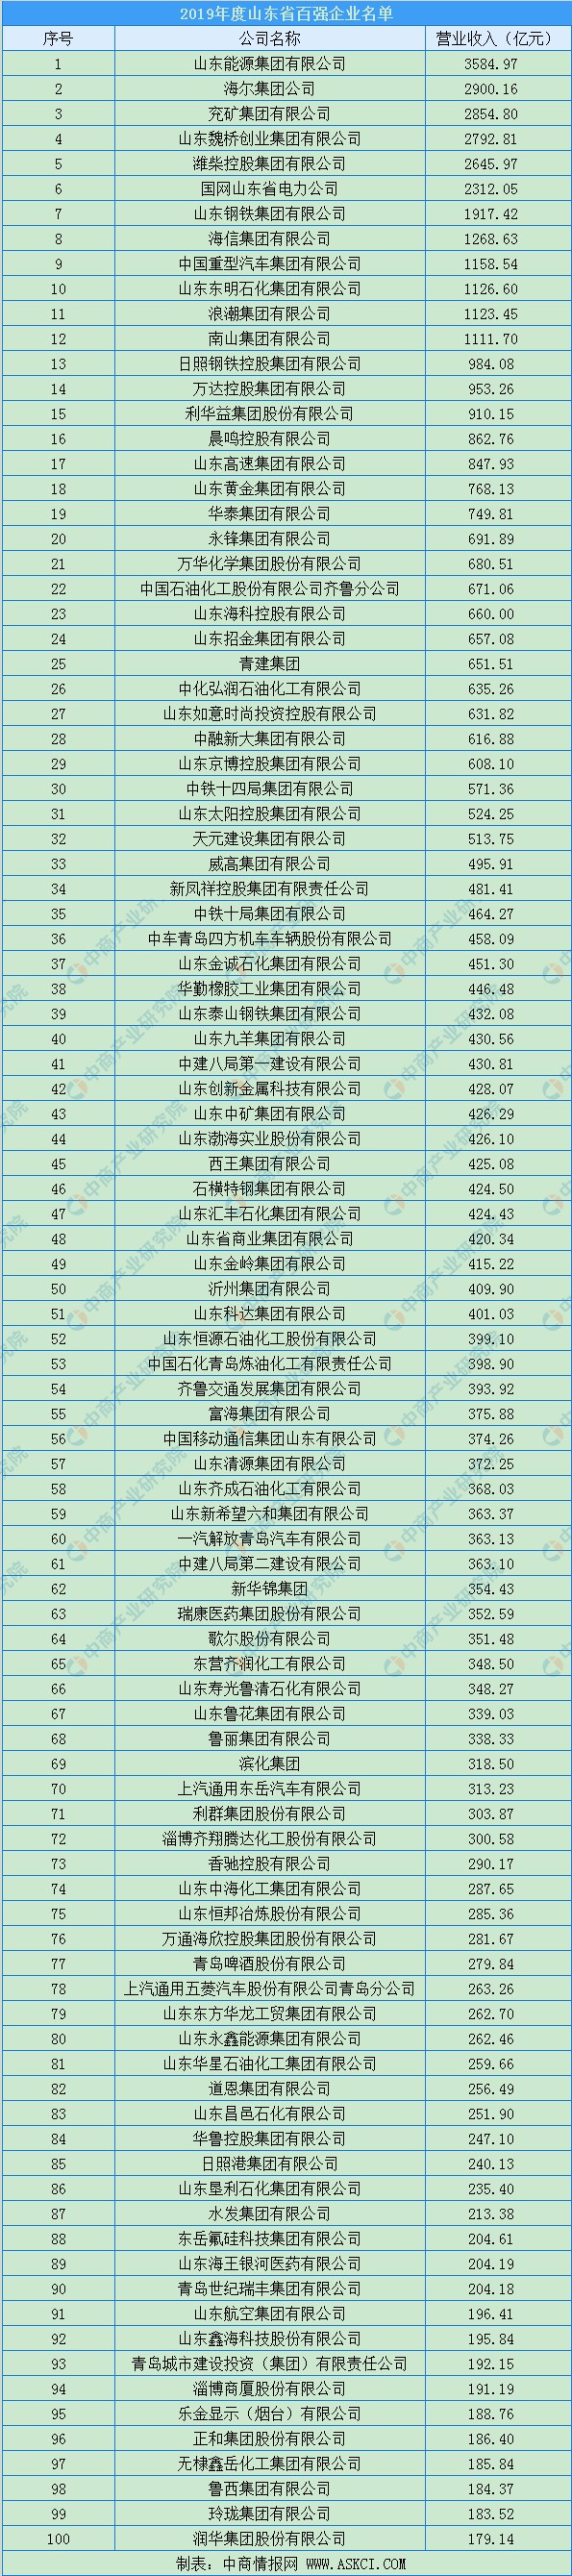 2020年山东省综合百强企业排行榜